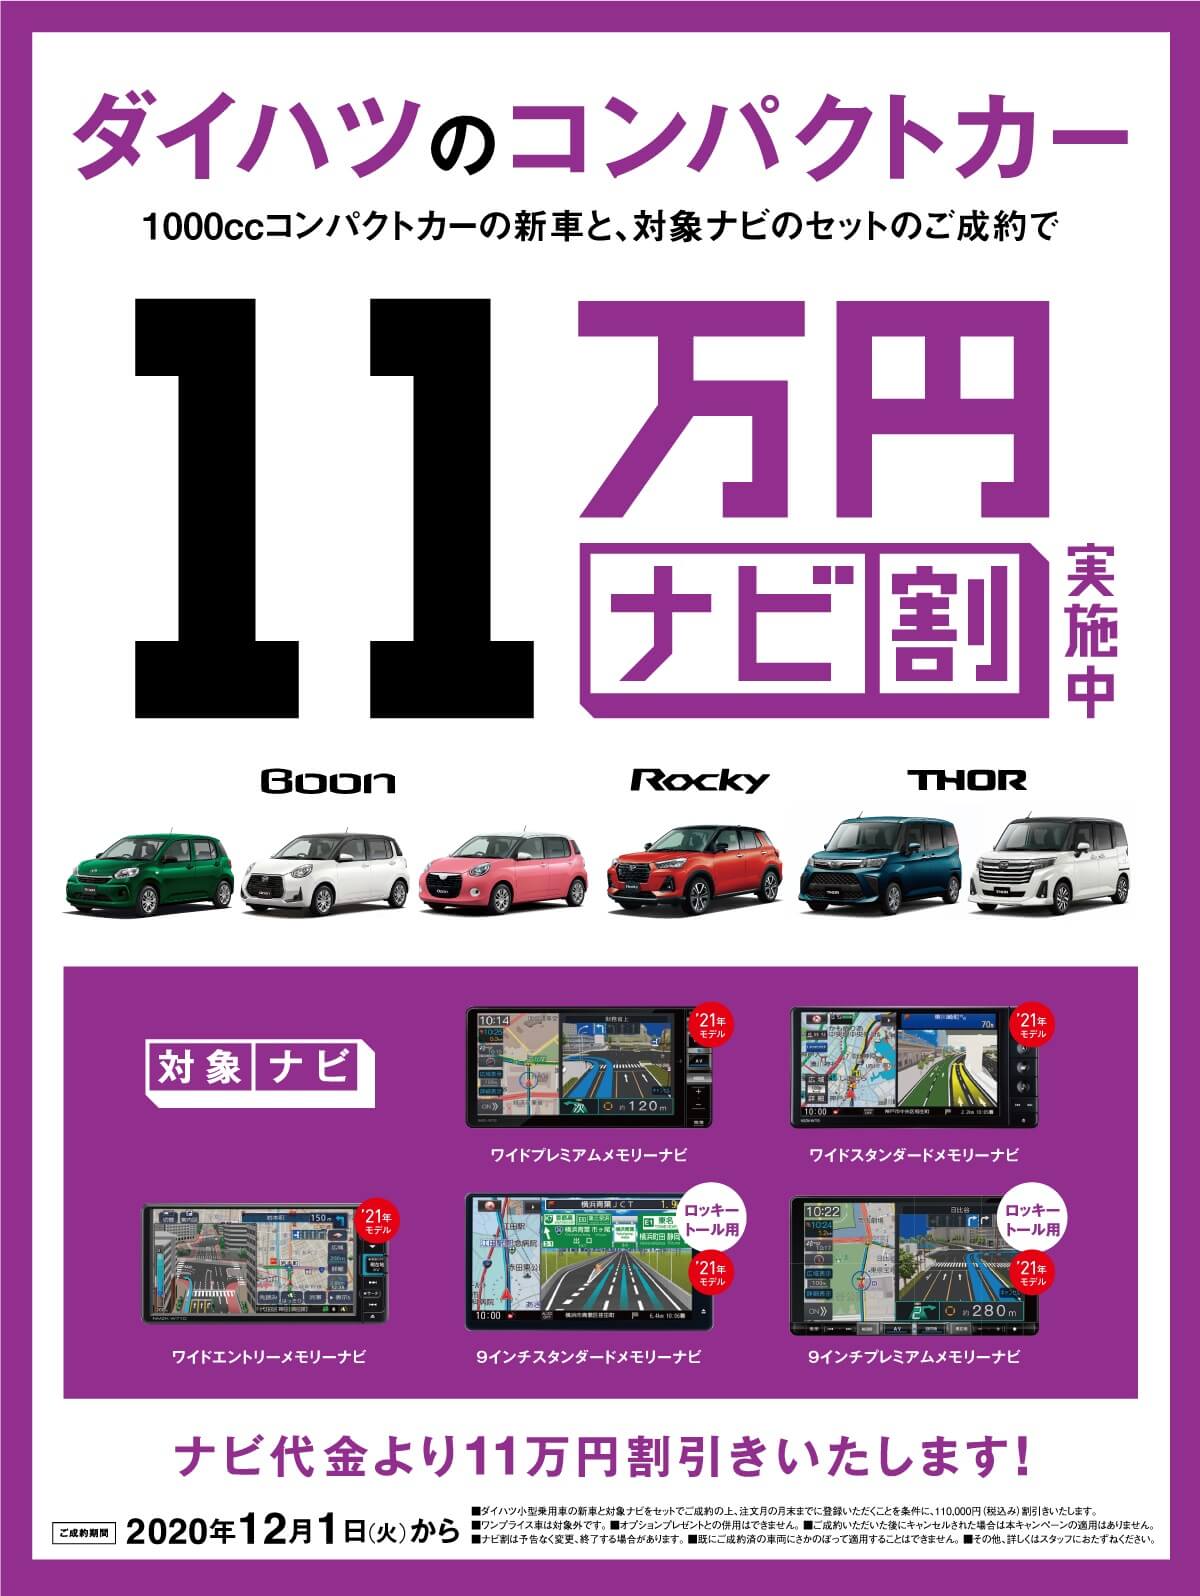 コンパクトカー ナビ割11万円キャンペーン 公式 石川ダイハツ販売株式会社